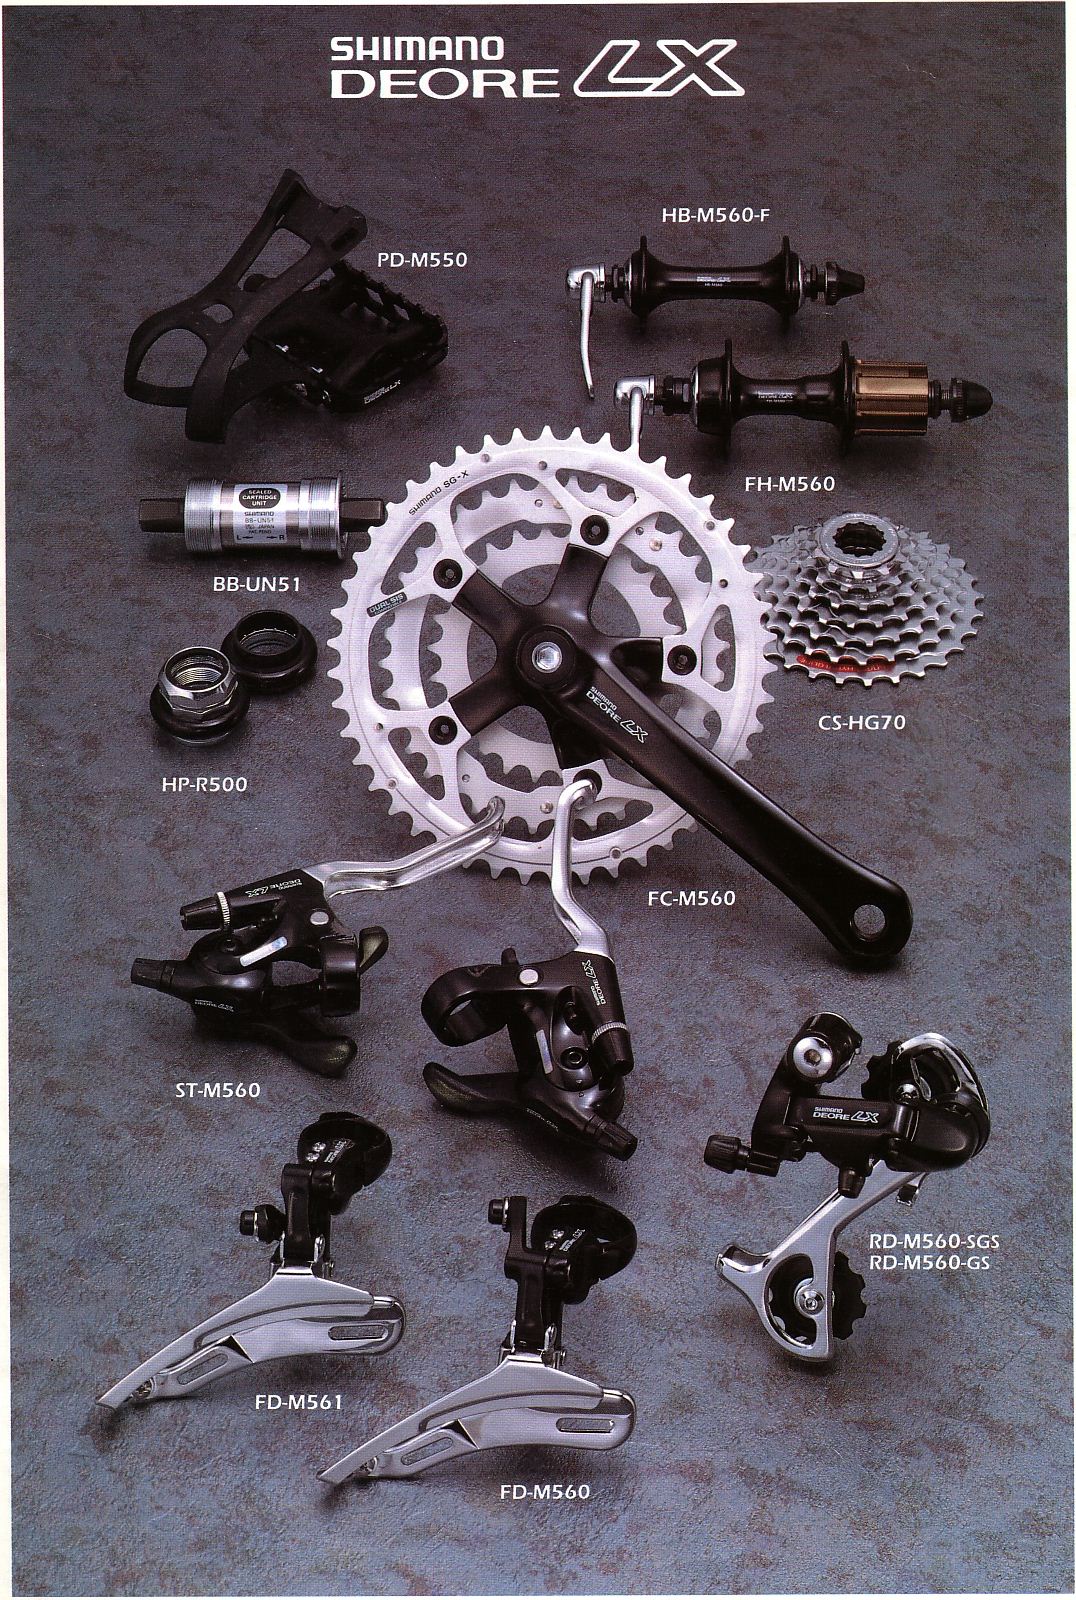 fragment Langwerpig Luchtvaart Deore LX | Shimano Catalogue 1994 | Retrobike